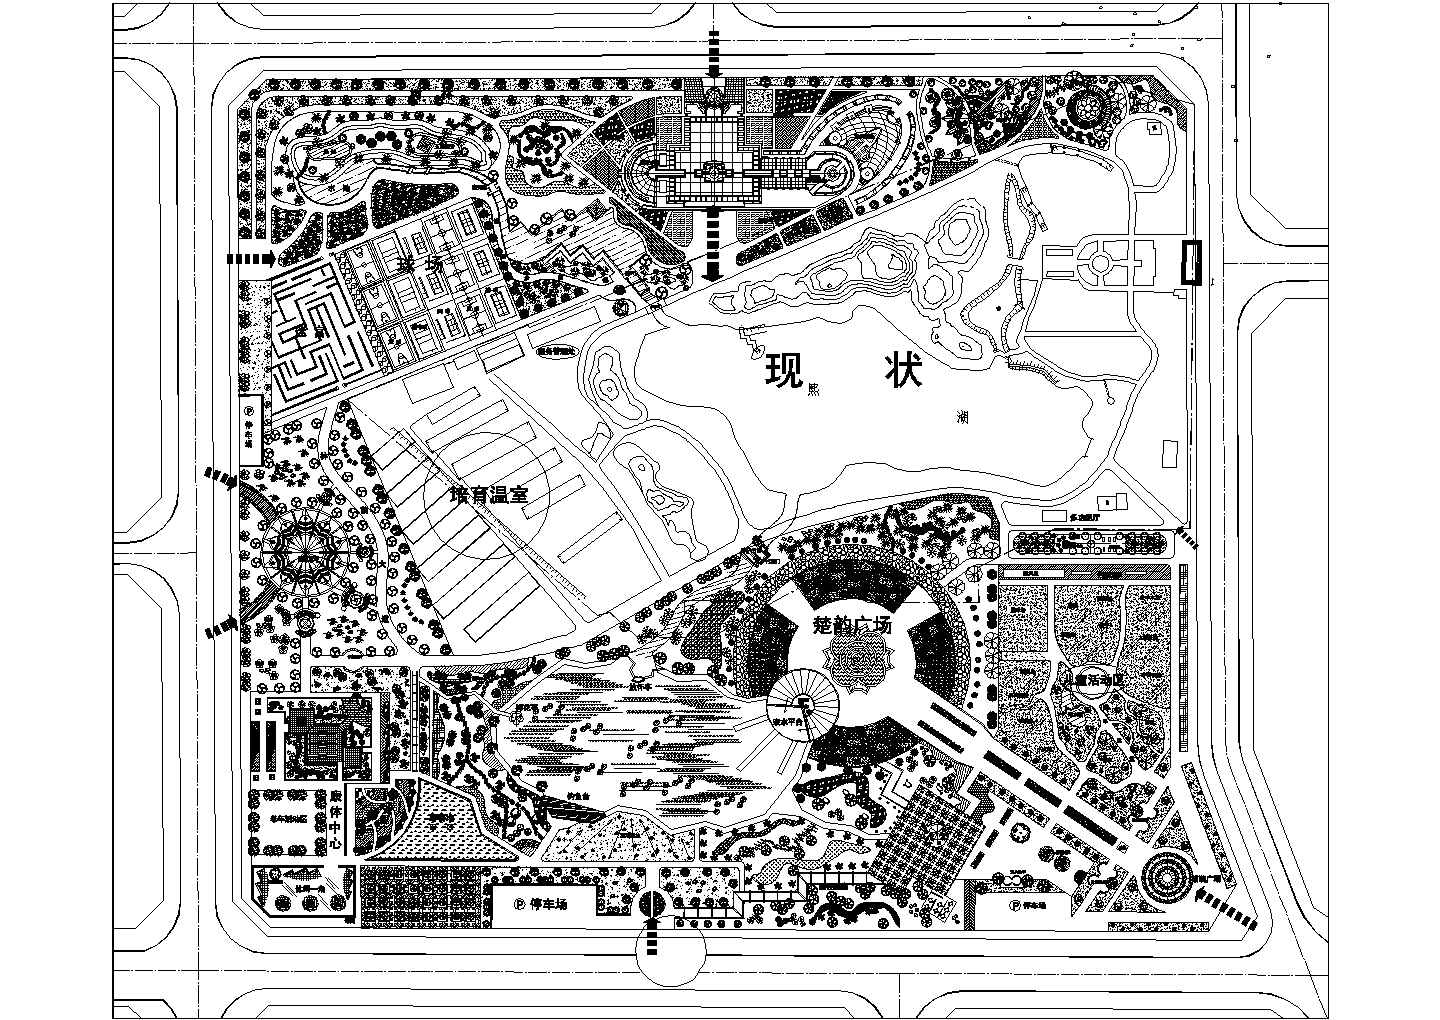 一个综合类的城市公园详细规划设计总图